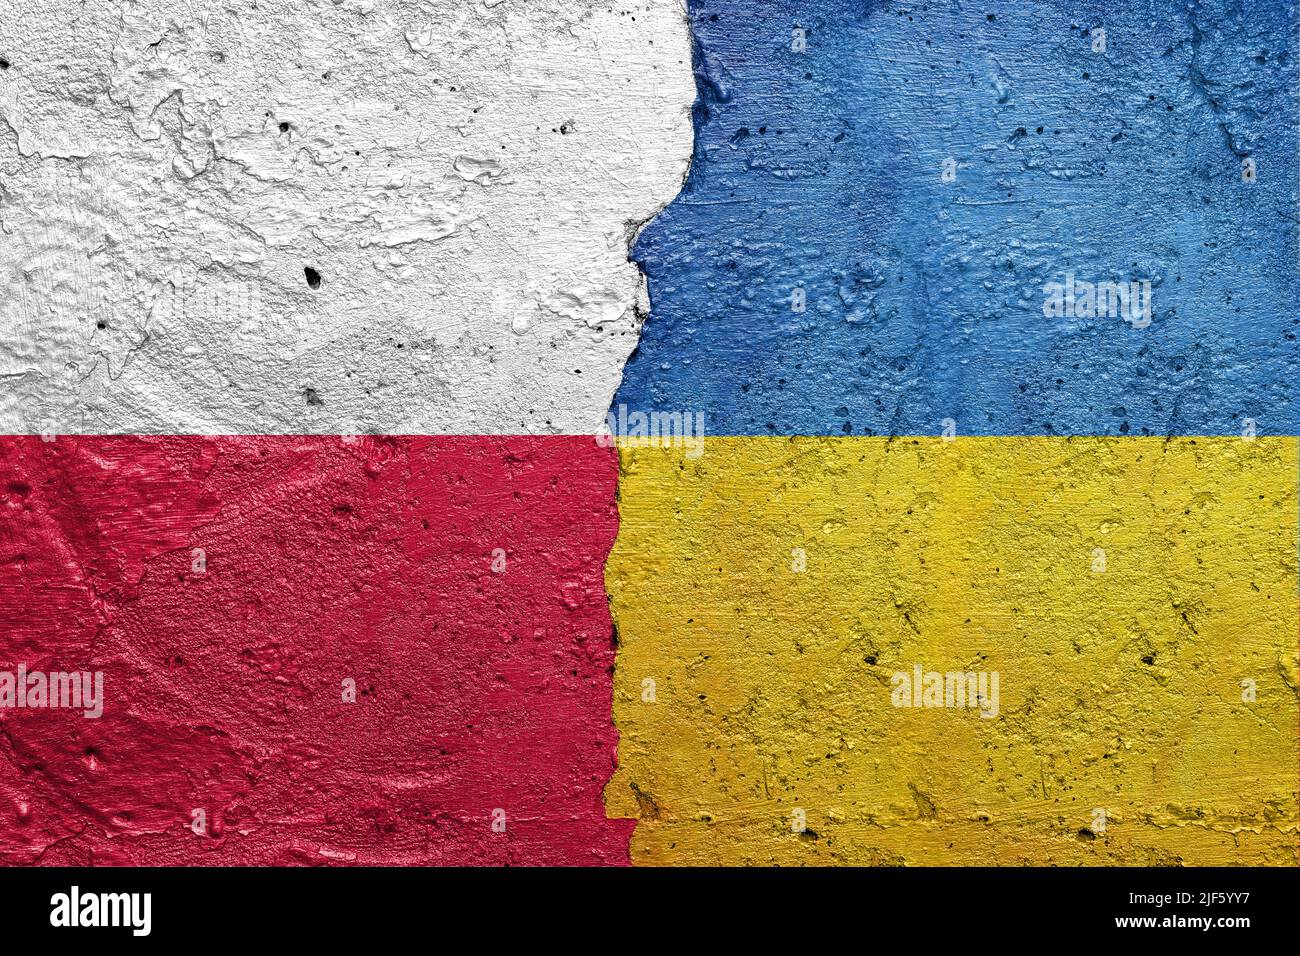 Drapeaux de Pologne et d'Ukraine - mur en béton fissuré peint avec un drapeau polonais à gauche et un drapeau ukrainien à droite Banque D'Images